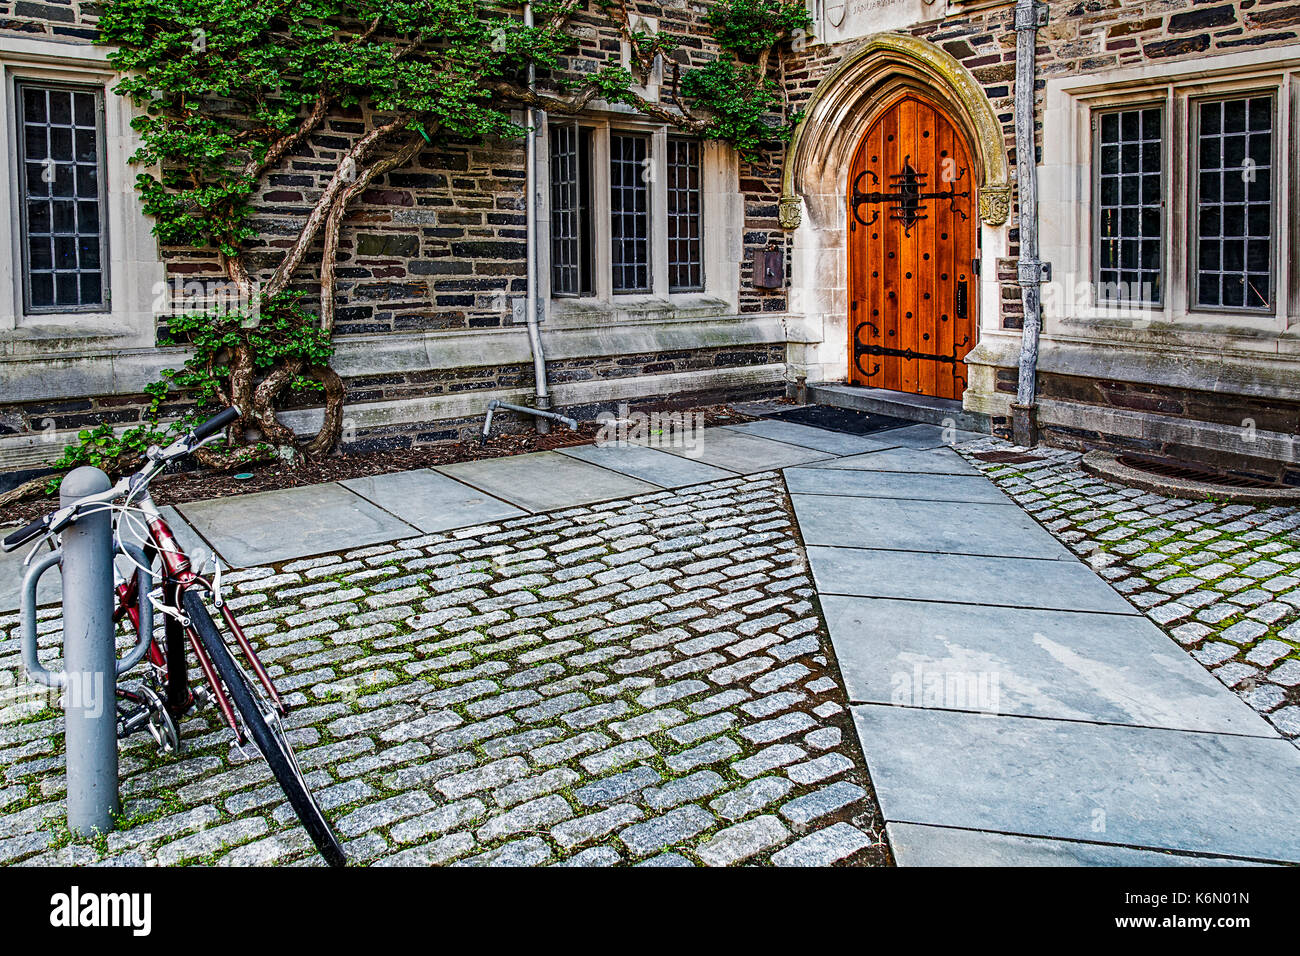 Princeton University Foulke Halle - hölzerne Tür Eintritt in das Wohnheim Gebäude in der Stiftskirche gotischen Architektur Stil Ivy League Princeton Univers Stockfoto